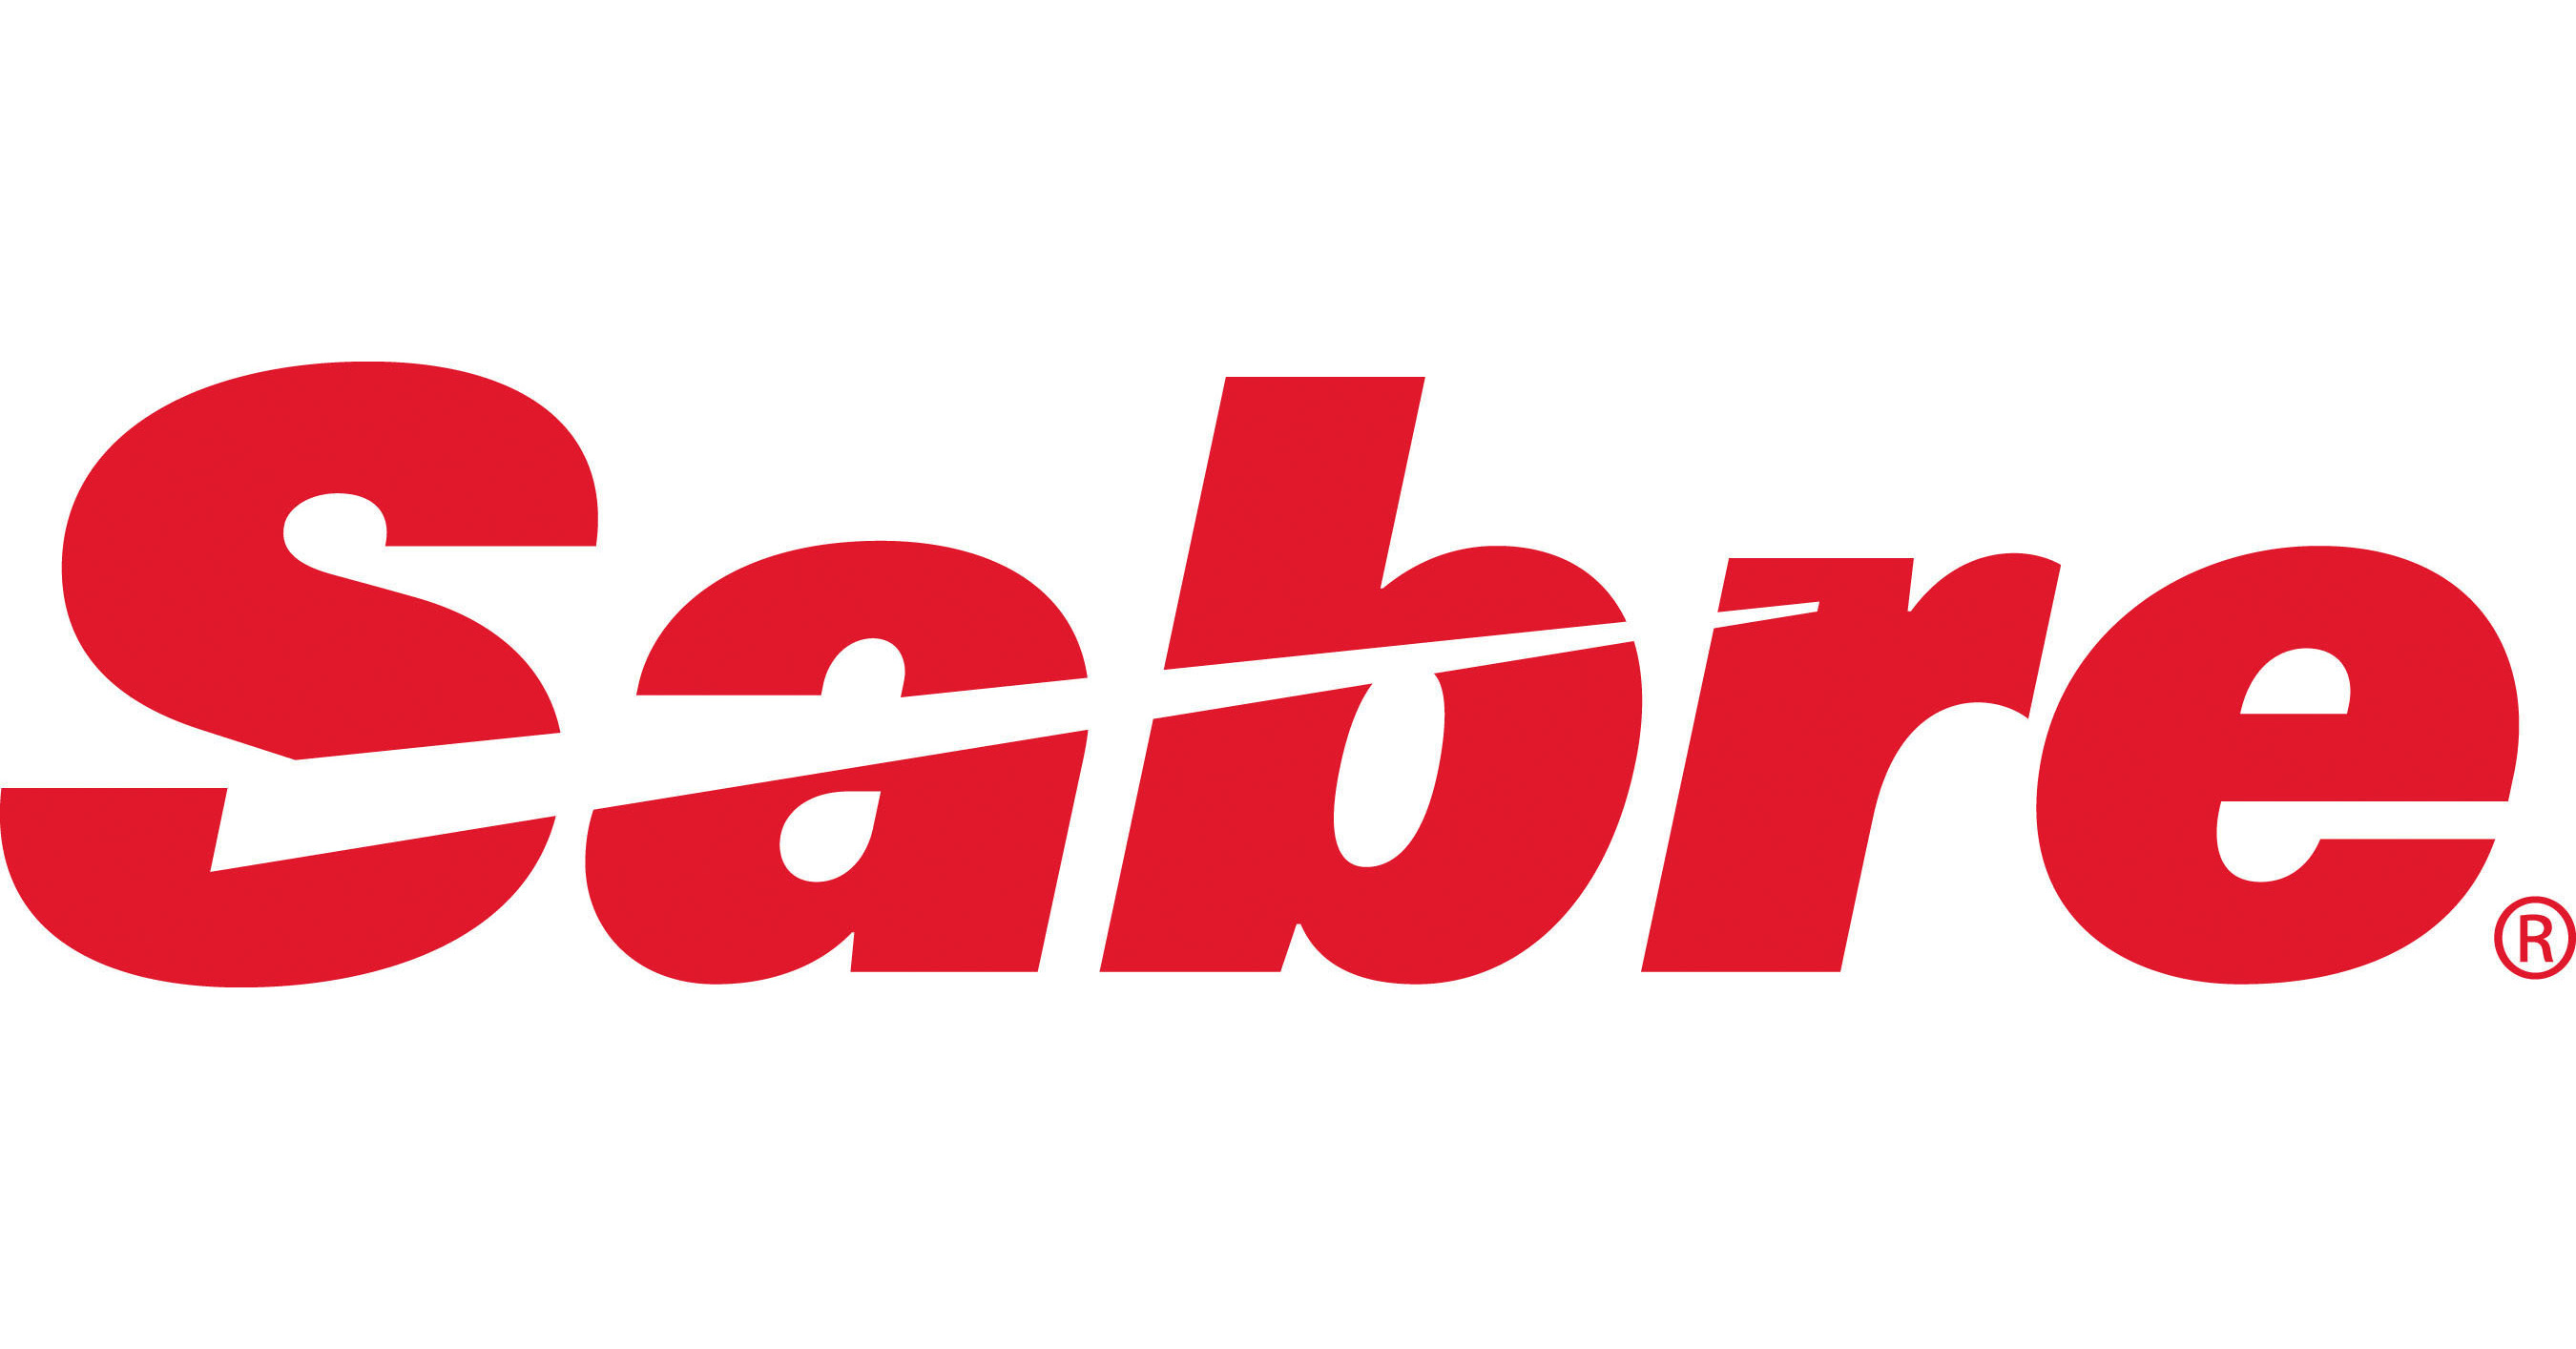 All Nippon Airwaysは、Sabreとの長い関係を強化し、ネットワーク計画と最適化機能を強化します。